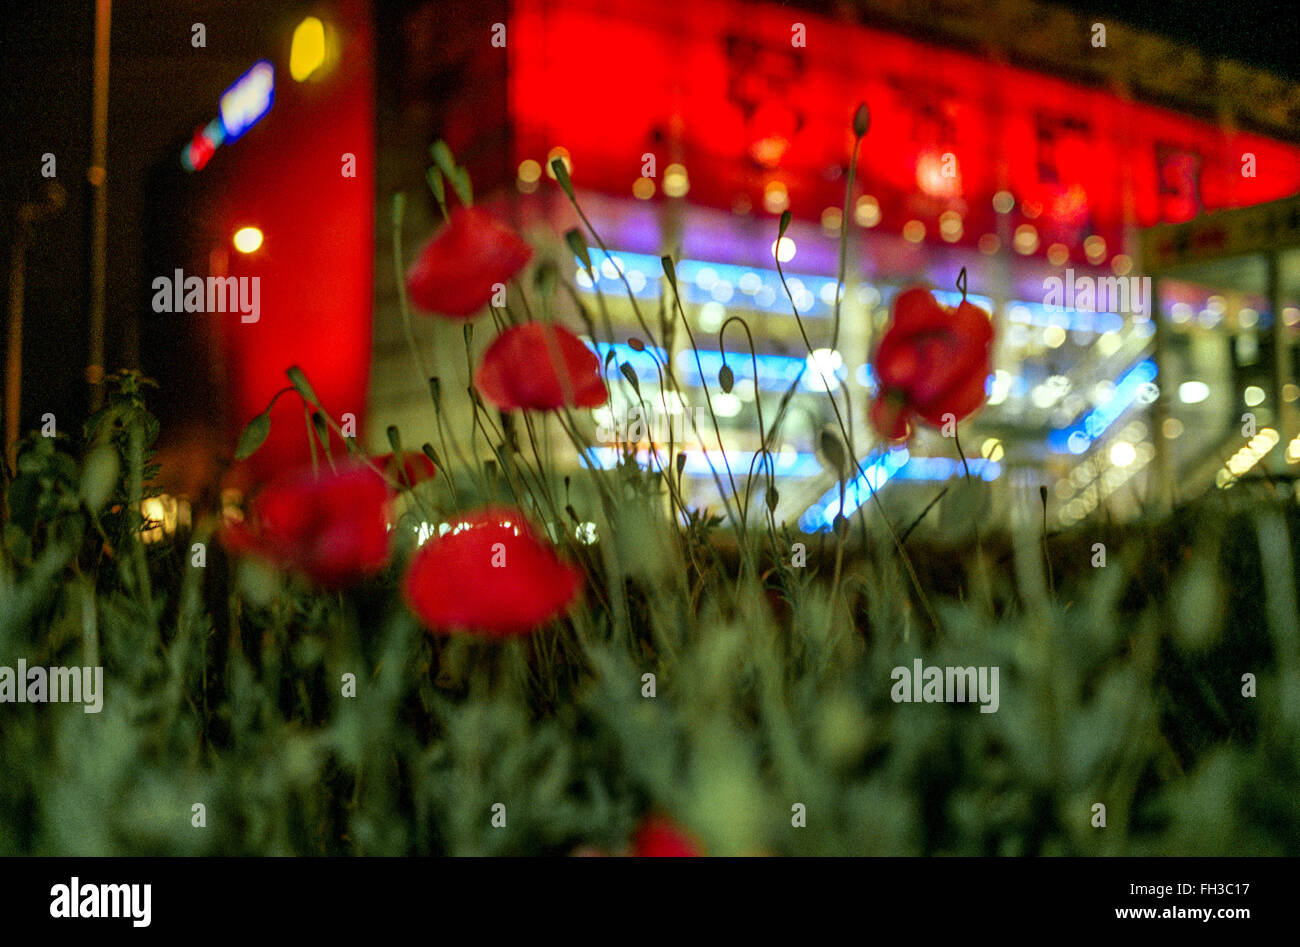 Las amapolas crecen frente al centro comercial, escena nocturna, plantas urbanas Foto de stock